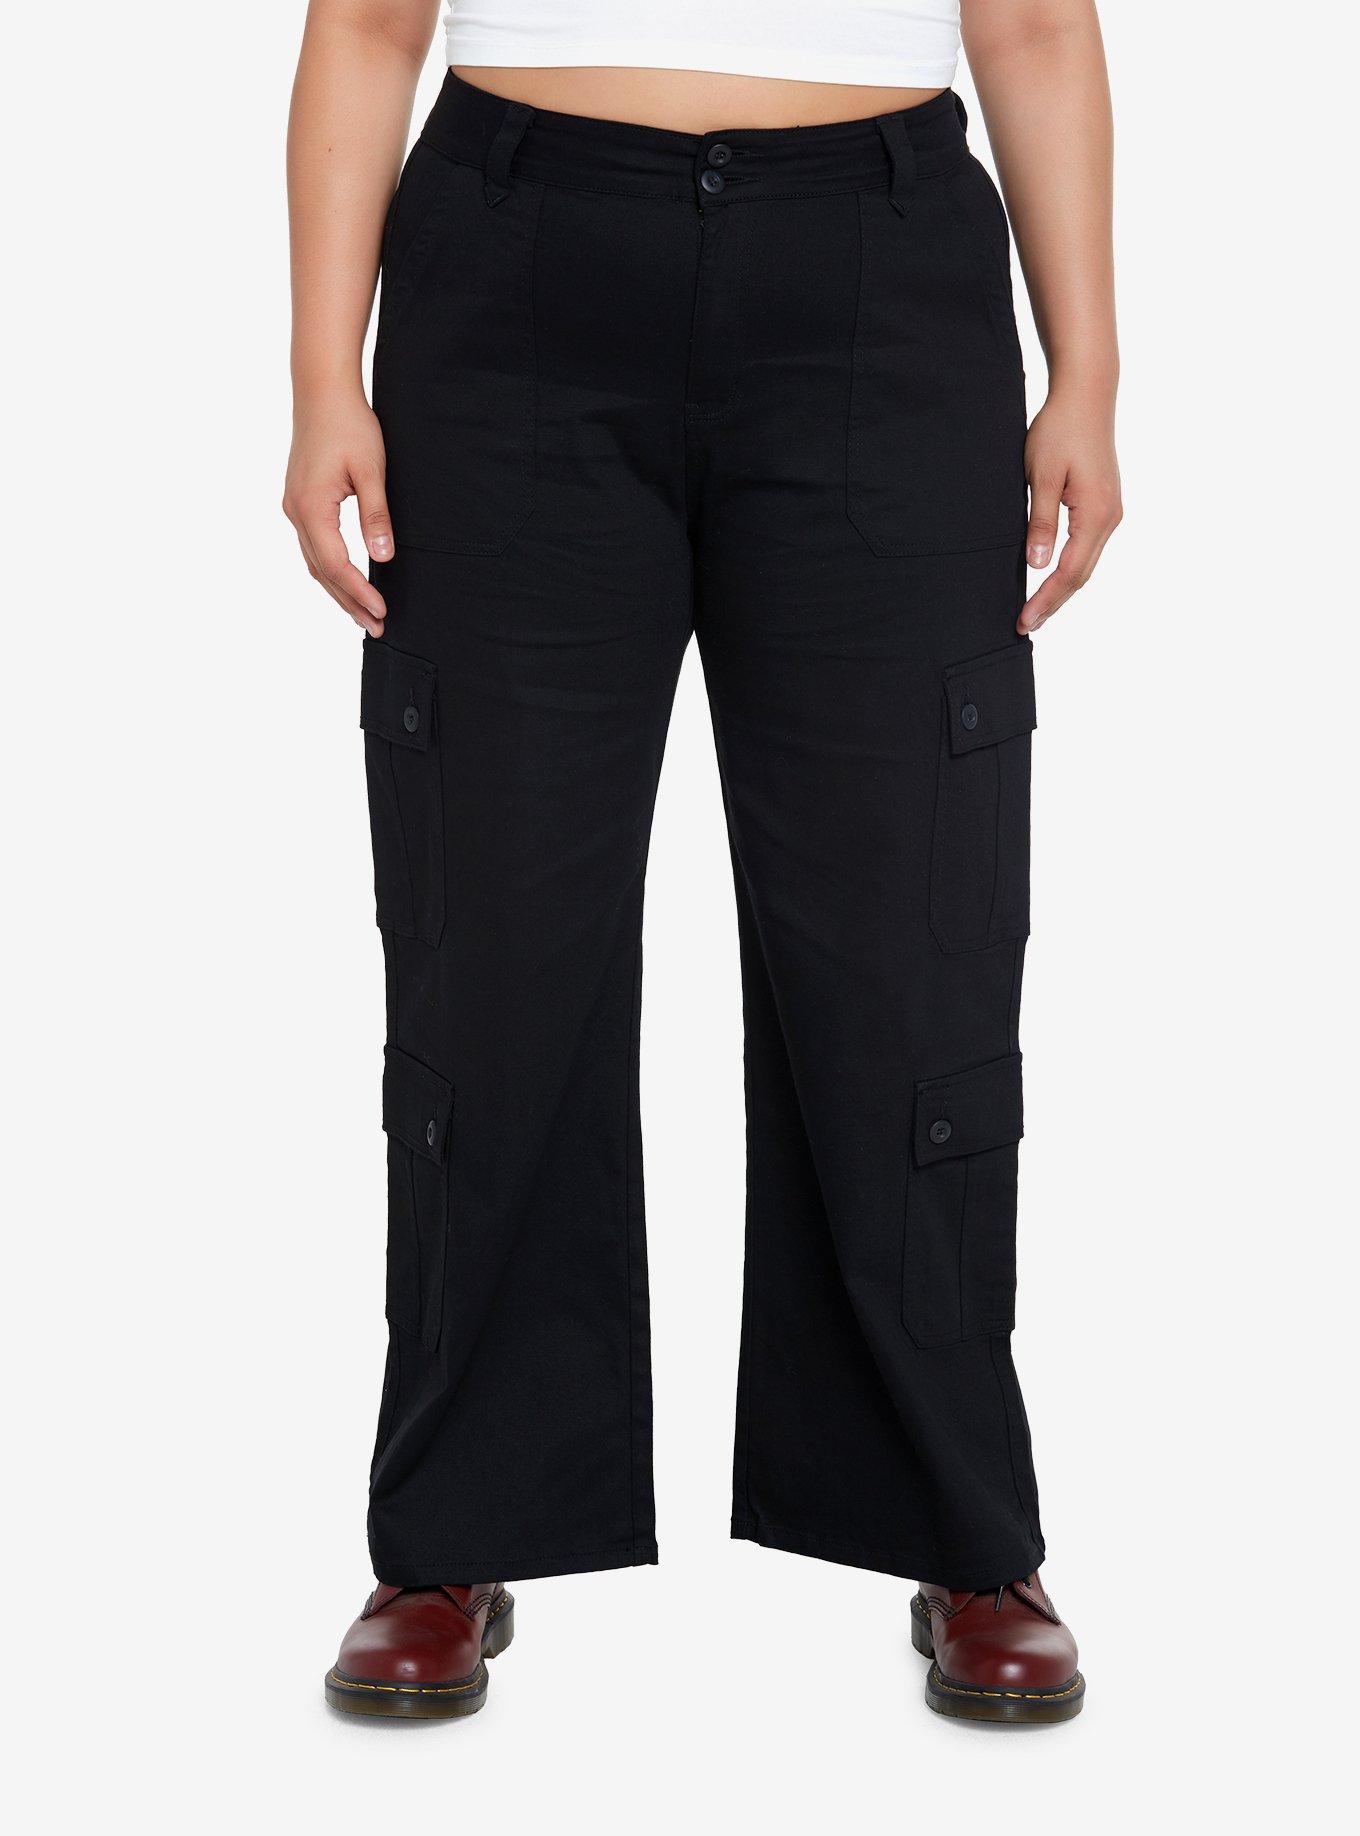 Social Collision Black Double Pocket Cargo Pants Plus Size